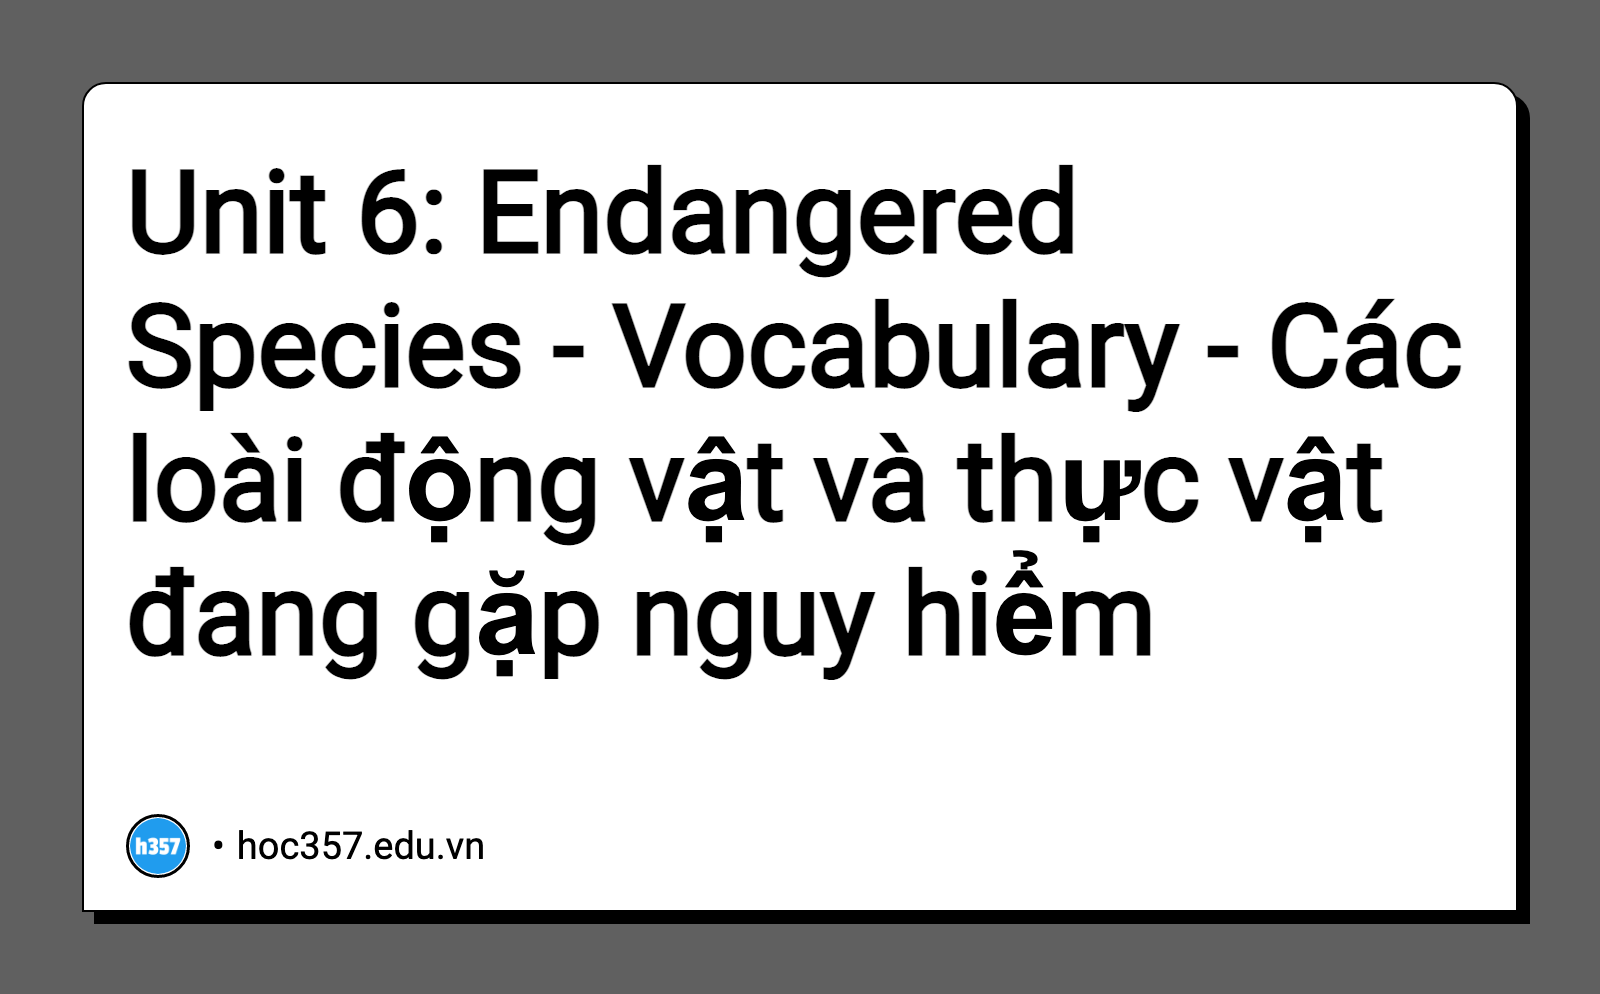 Unit 6: Endangered Species - Vocabulary - Các loài động vật và thực vật  đang gặp nguy hiểm